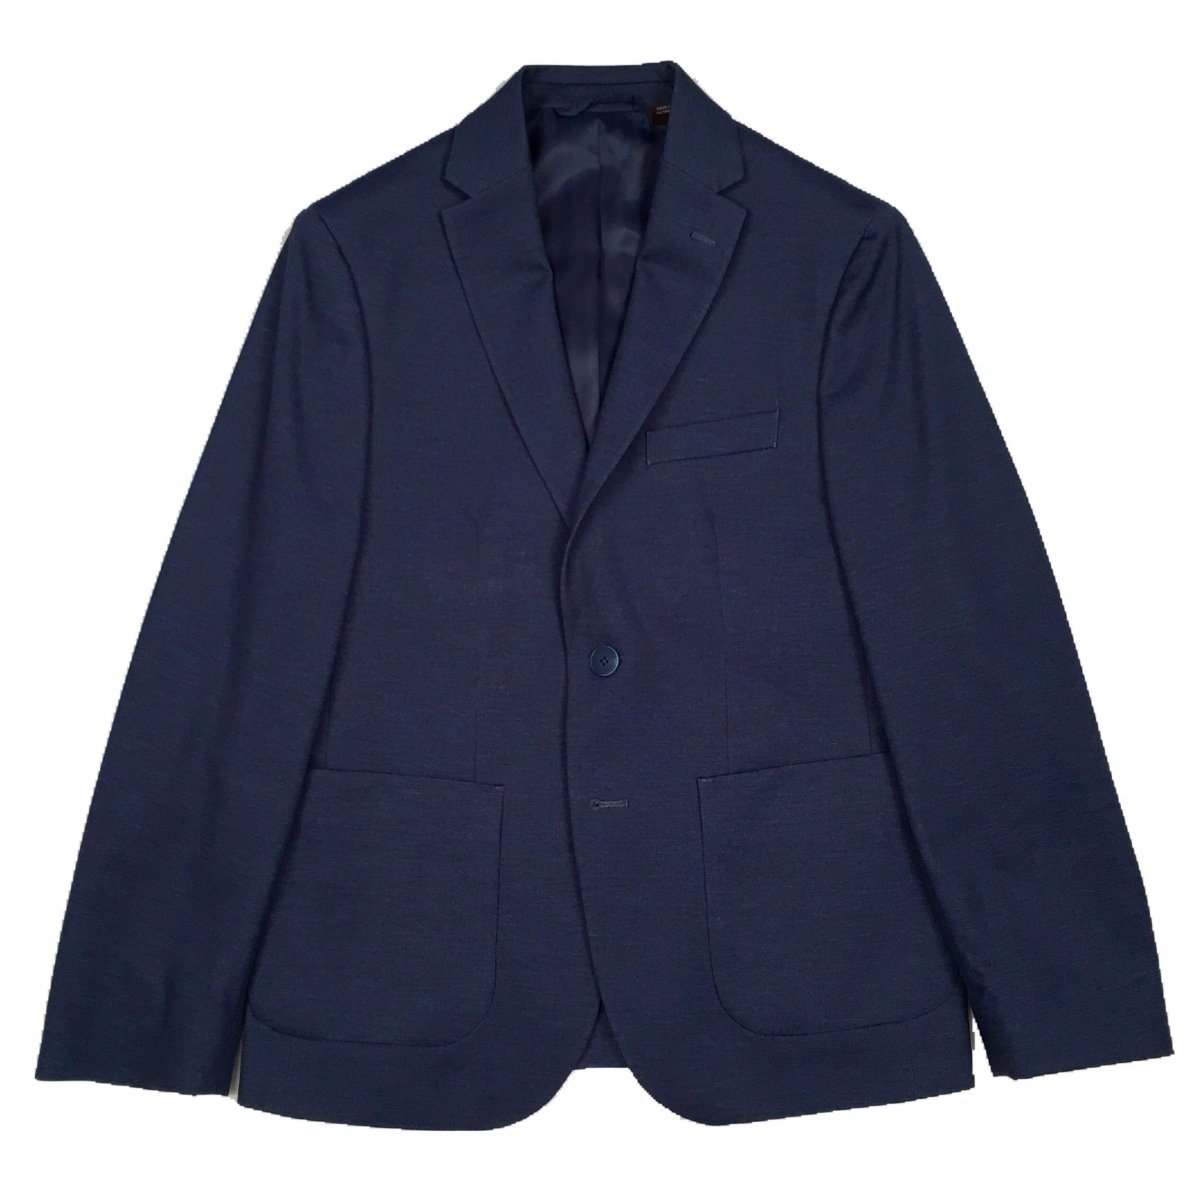 Michael Kors Boys Grey/Blue Sports Jacket 192 V0070 Sports Jackets Michael Kors 